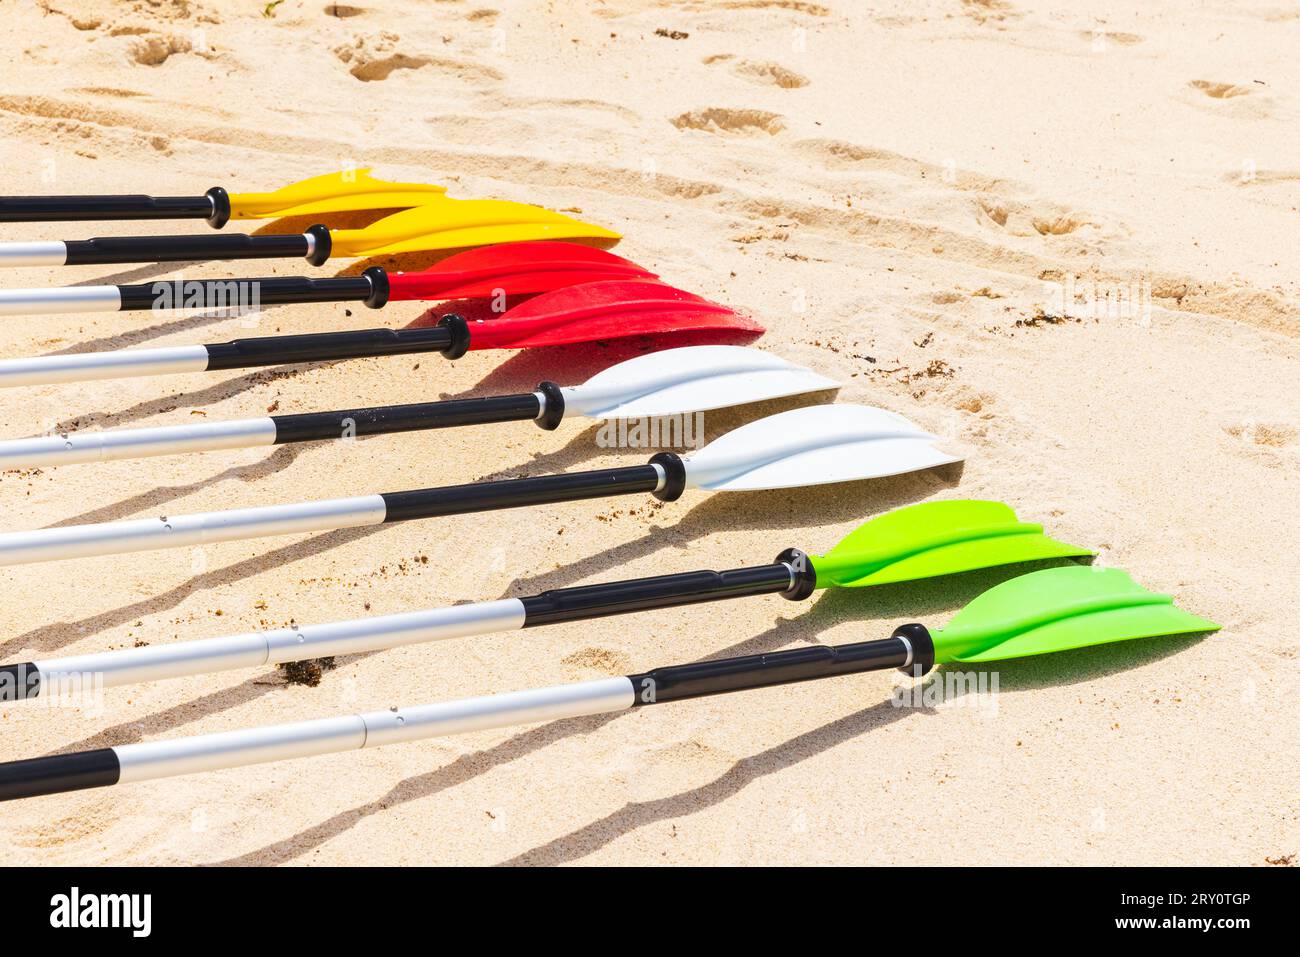 Pagaie colorate per andare in kayak si stendono sulla sabbia bianca in una giornata di sole, sulla spiaggia delle Seychelles Foto Stock